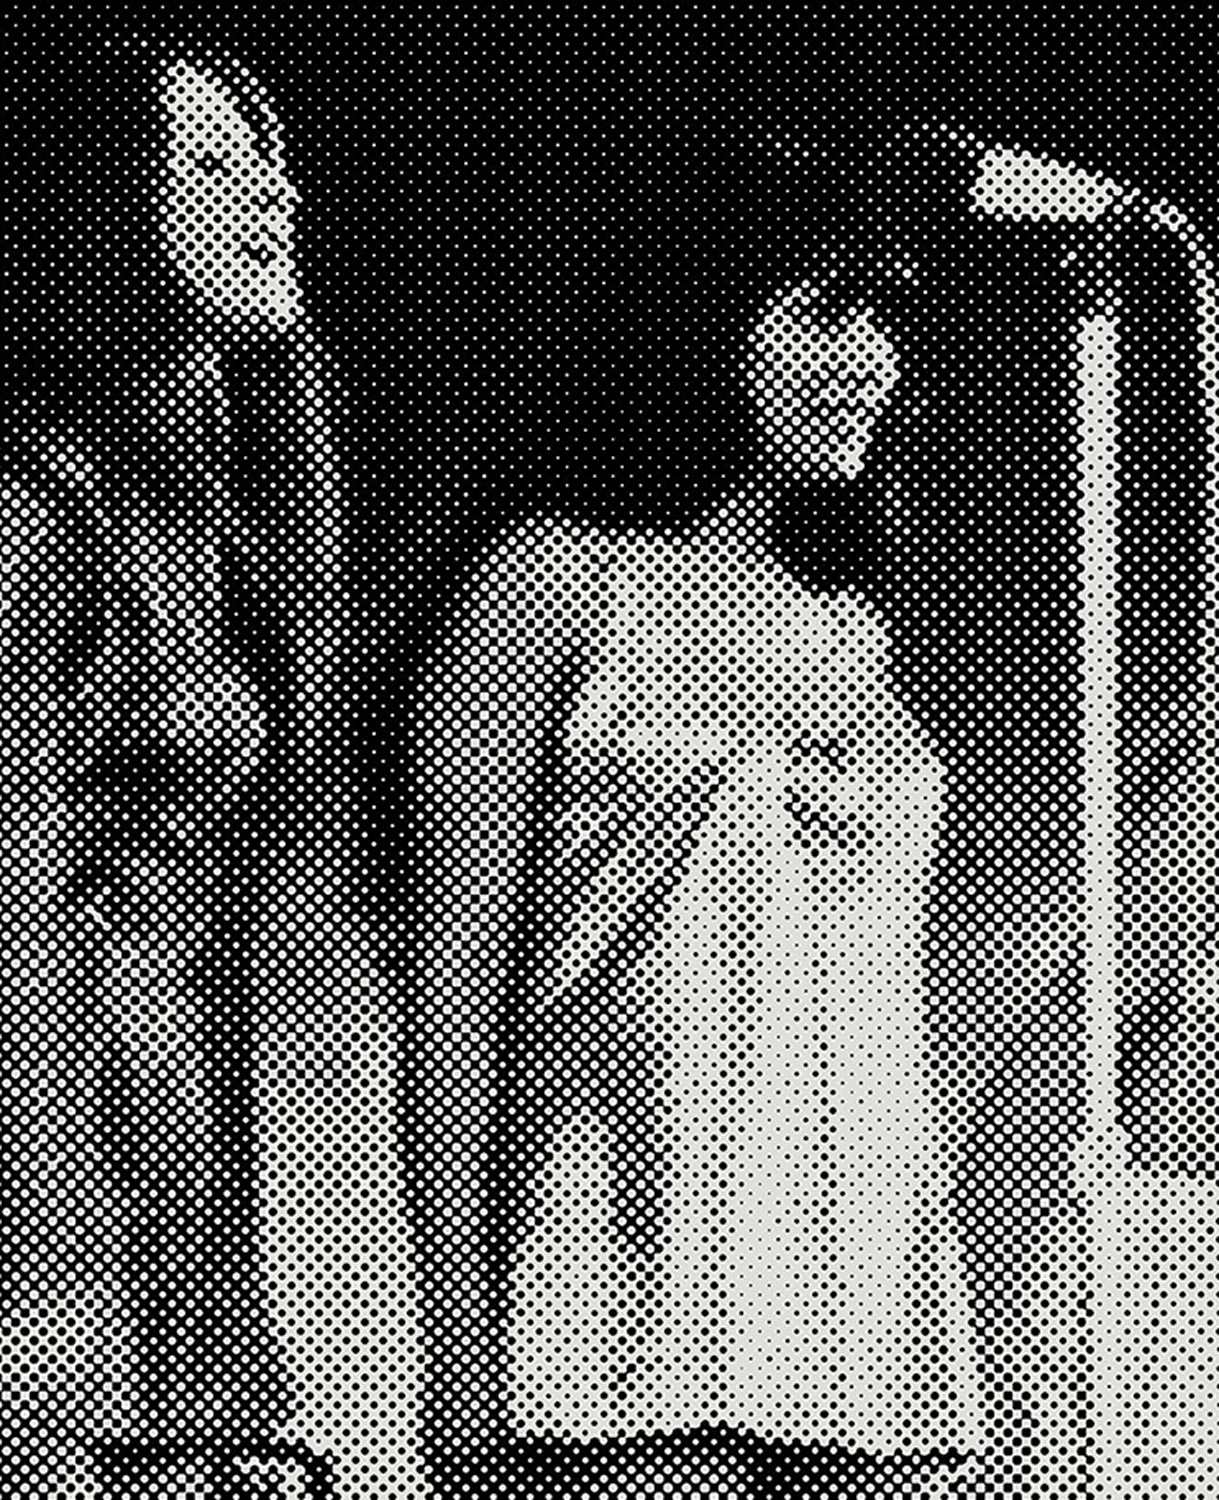 05-1971 [Entertainers at the Aussie Badcoe Club Vung Tau, Vietnam], 2018 - Vue suppl&eacute;mentaire